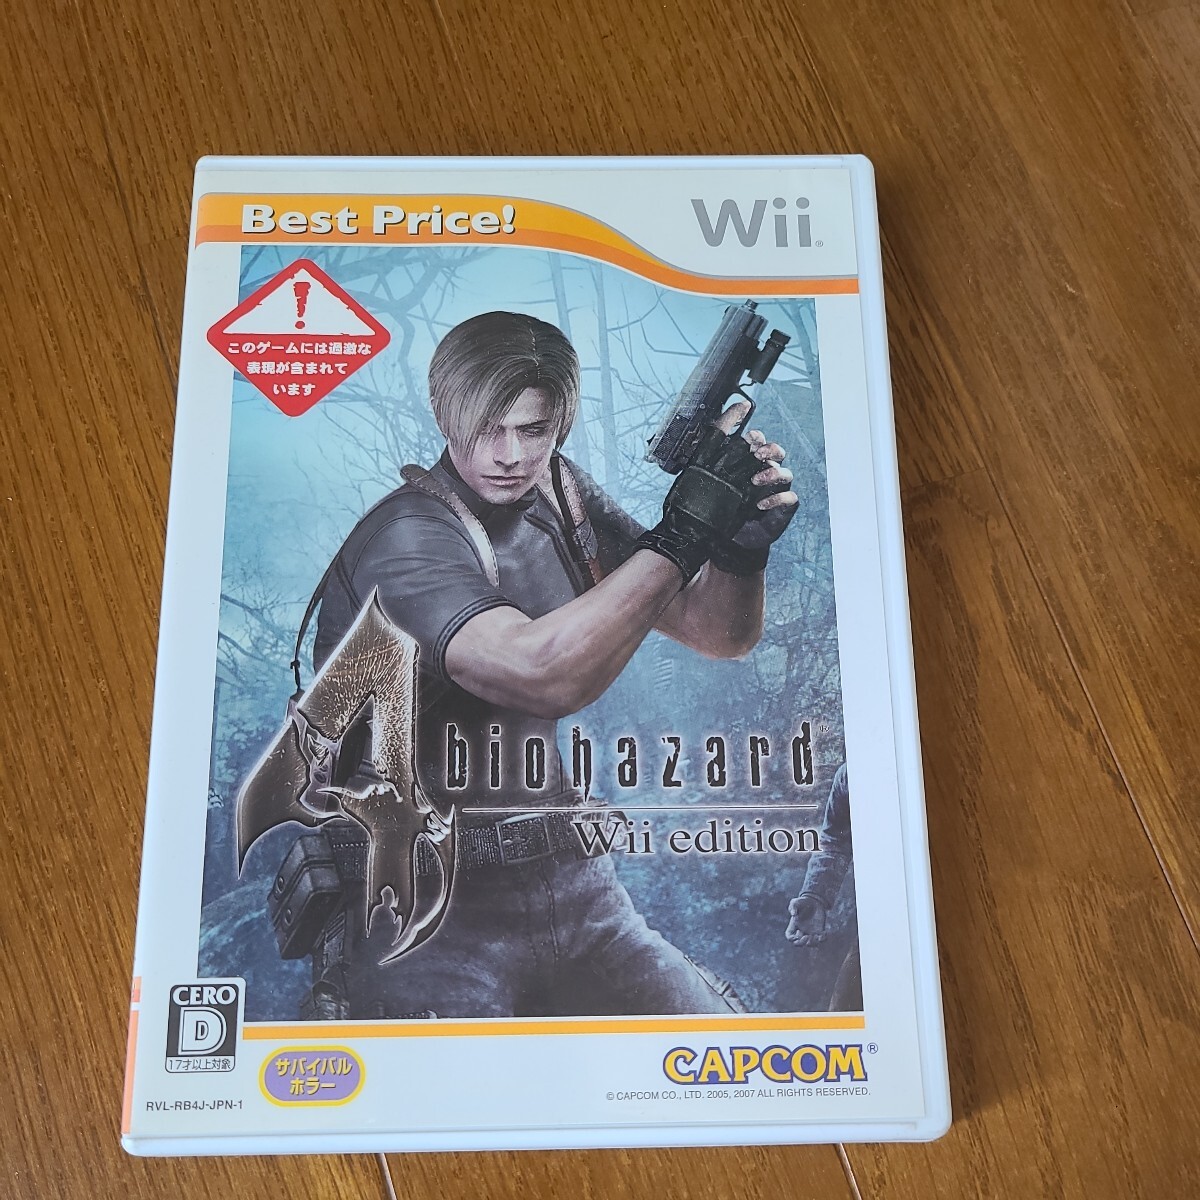  nintendo Wii Vaio hazard Wii edition Wii nintendo Wii soft soft 